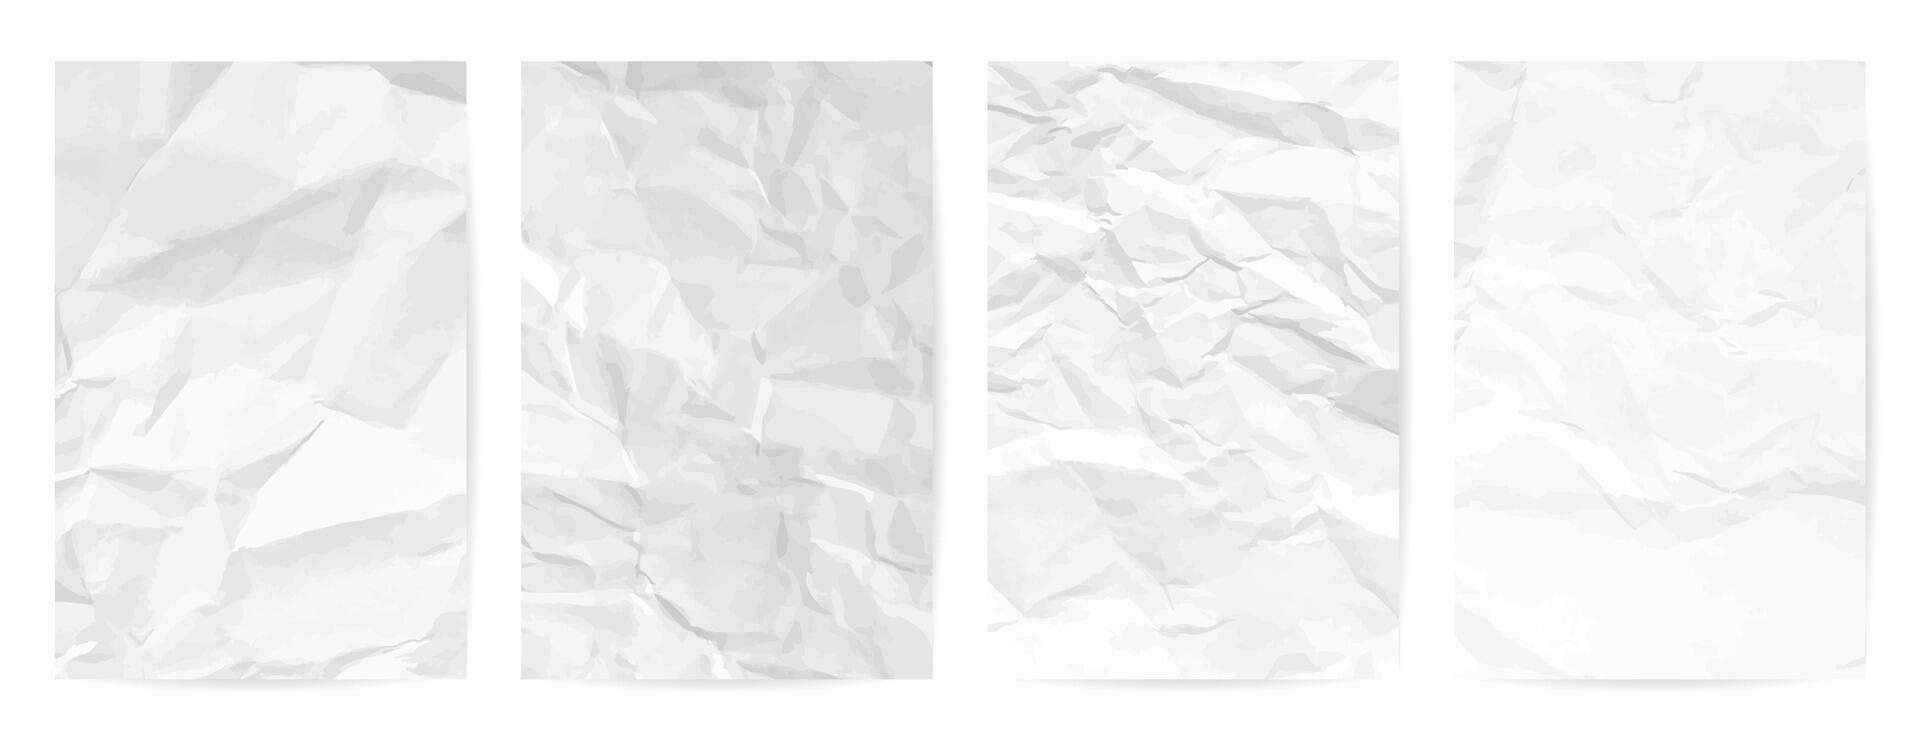 vit rena skrynkliga papper bakgrund. uppsättning av fyra vertikal skrynkliga tömma papper mallar för posters och banderoller. vektor illustration